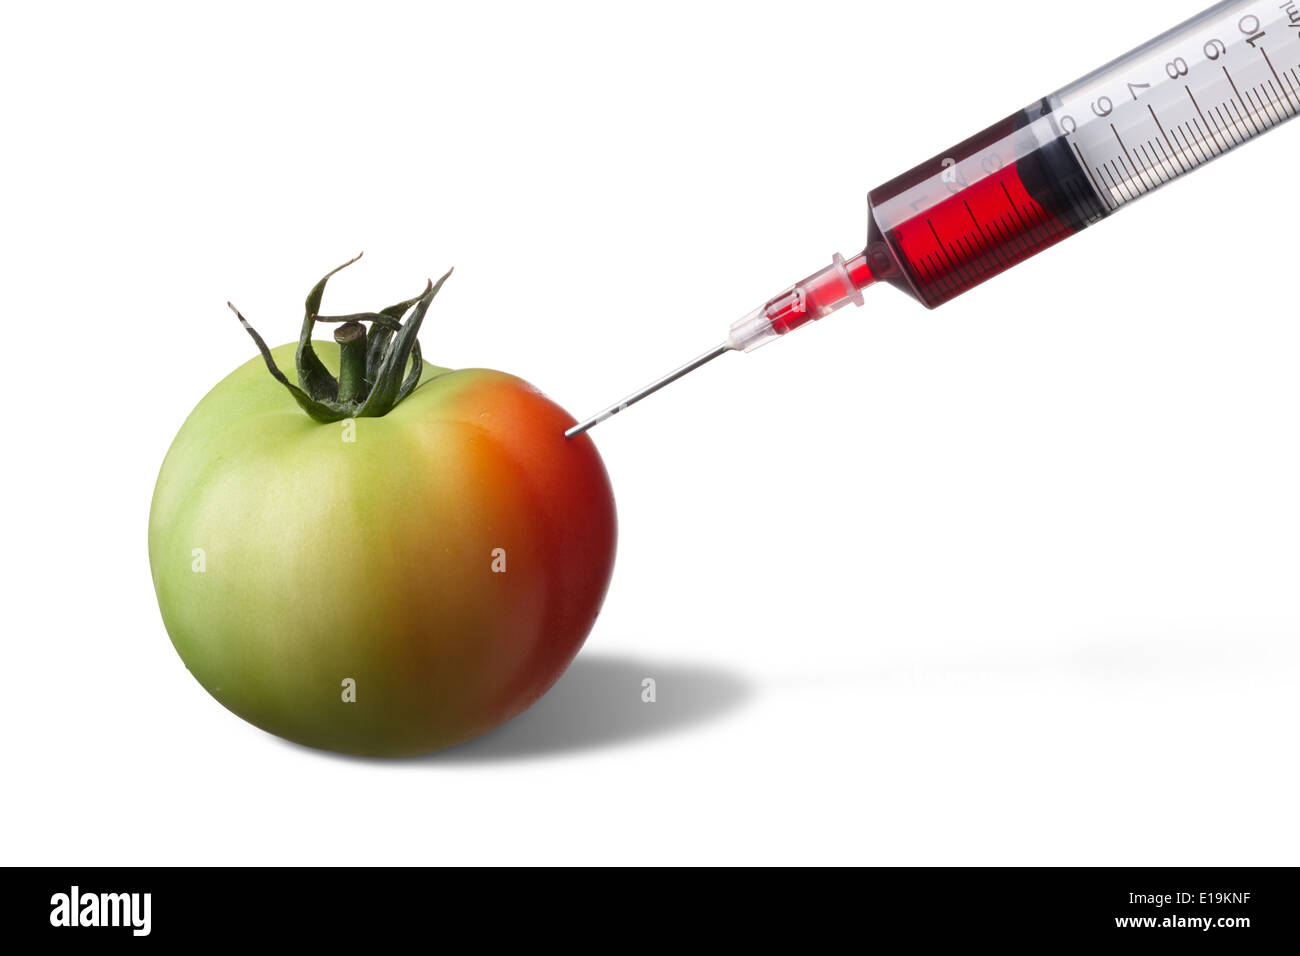 Spritze Injektion auf unreife Tomaten schneller zum reif zu zwingen Stockfoto